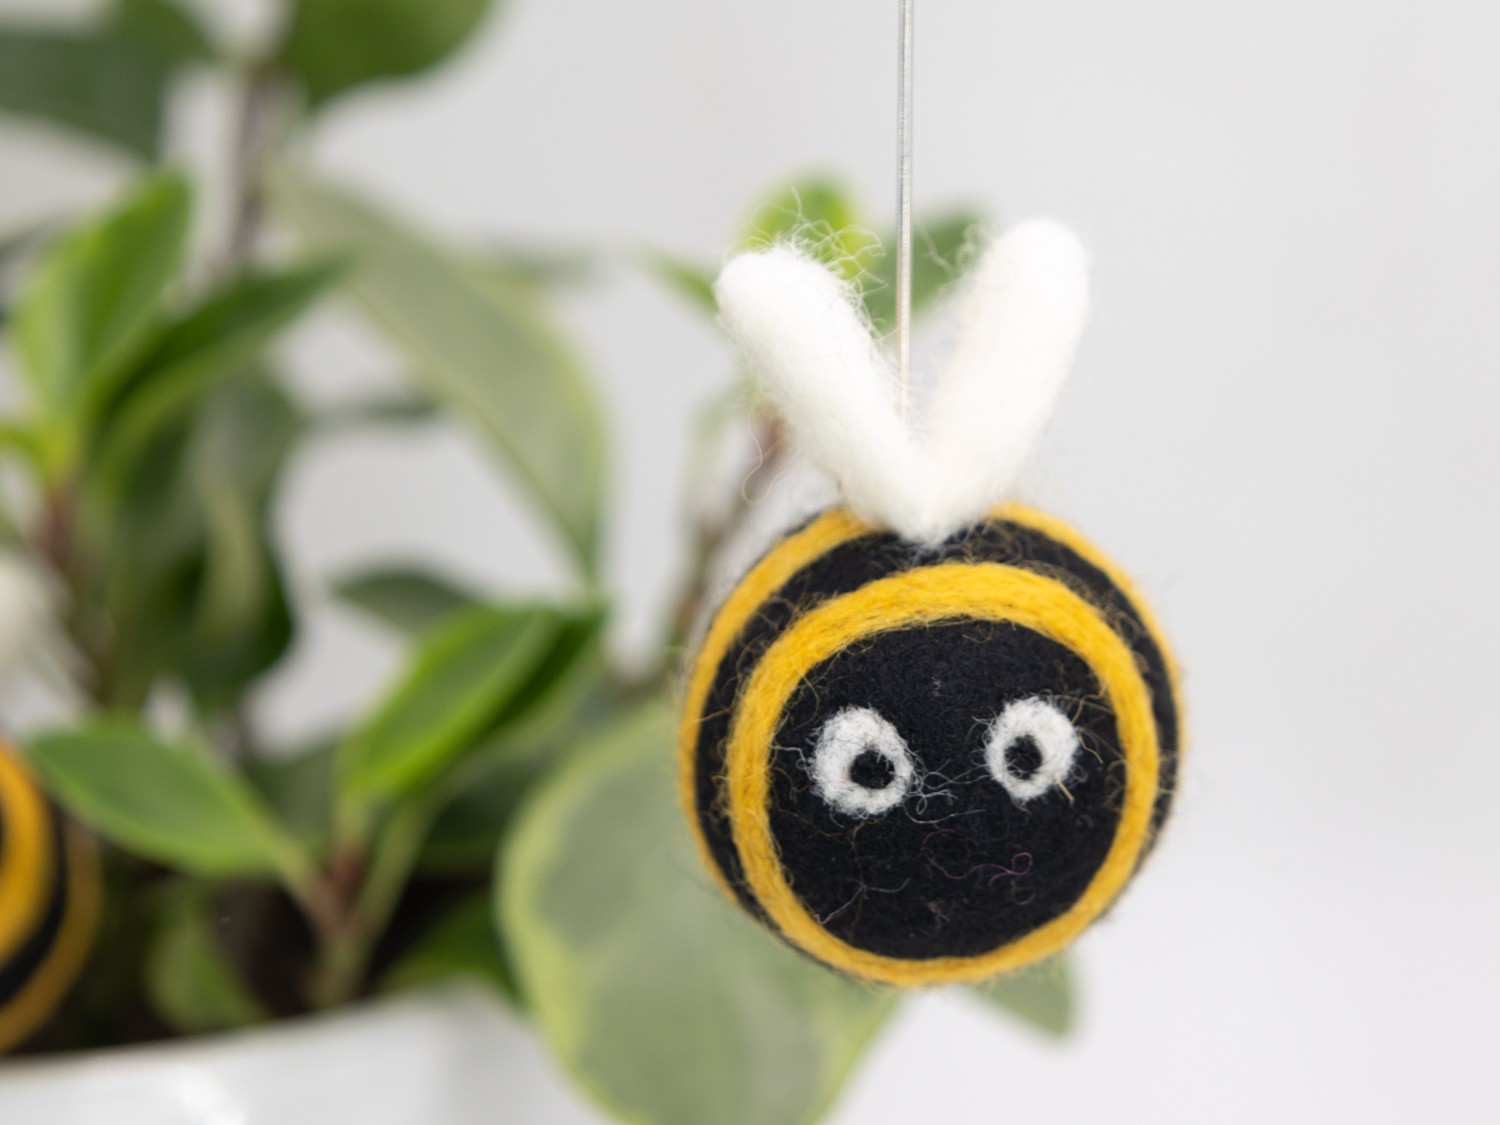 5cm Felt Bumblebee Ornament